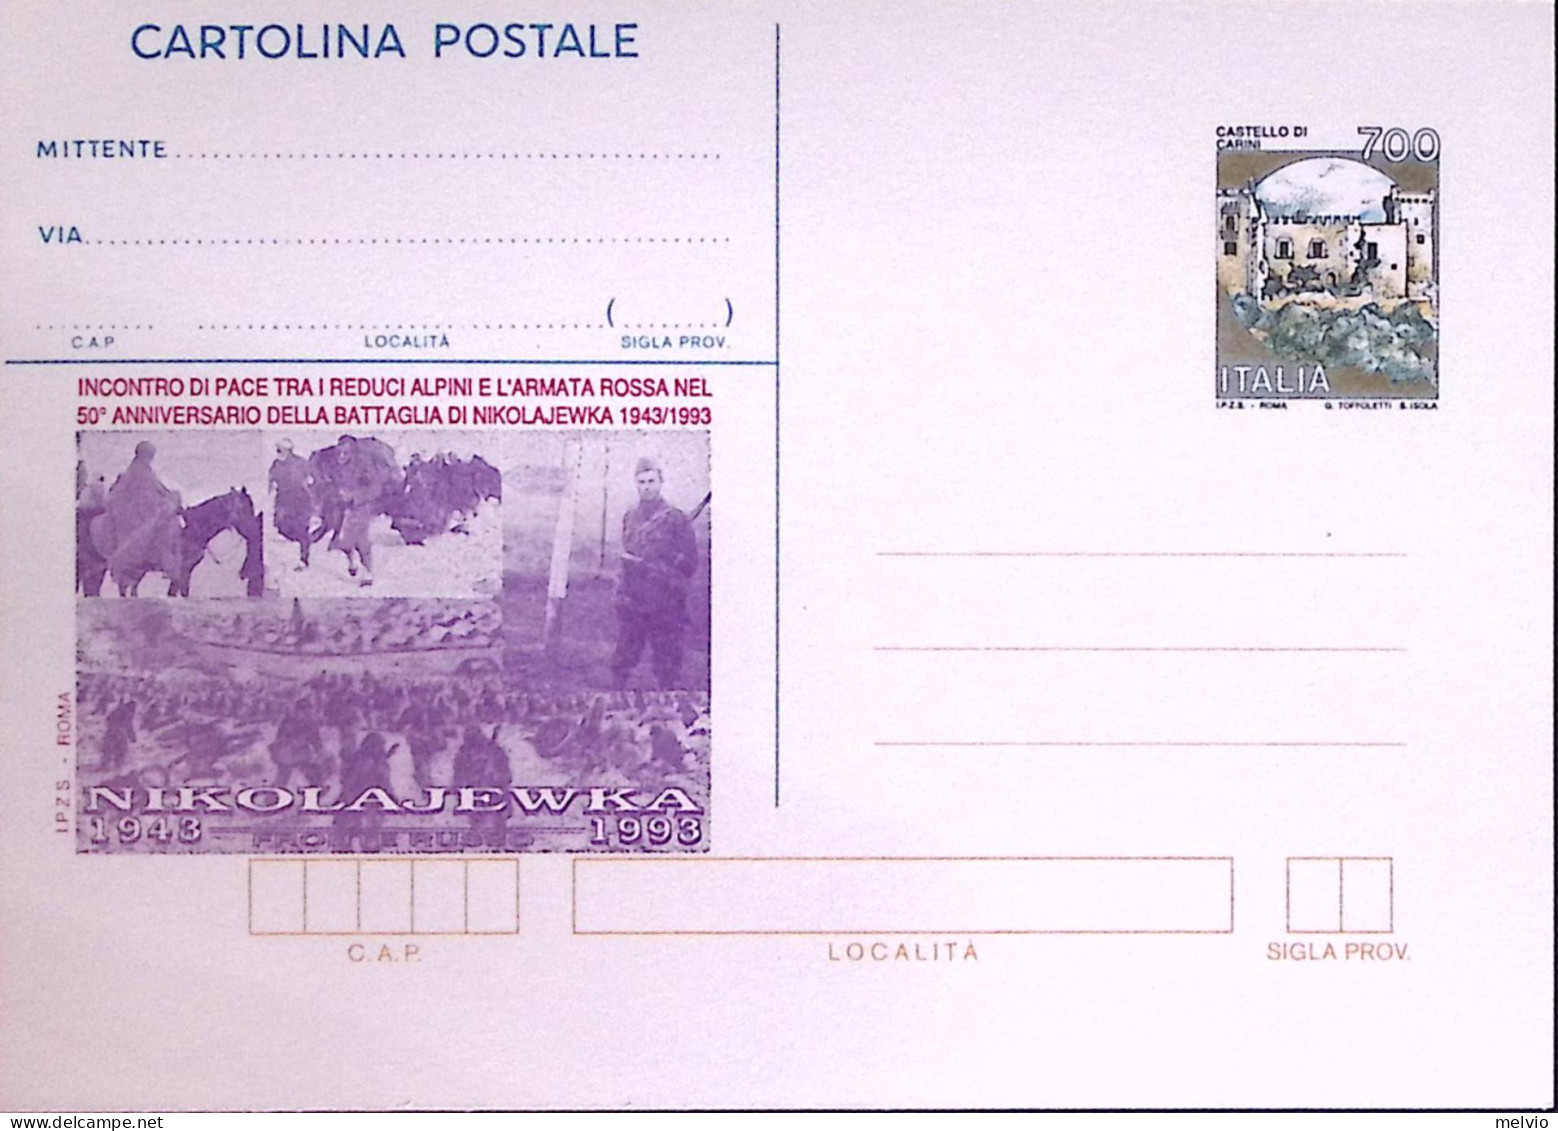 1993-Cartolina Postale Lire 700 Sopr. IPZS 50 Anniversario Battaglia Di Nicolaje - Ganzsachen